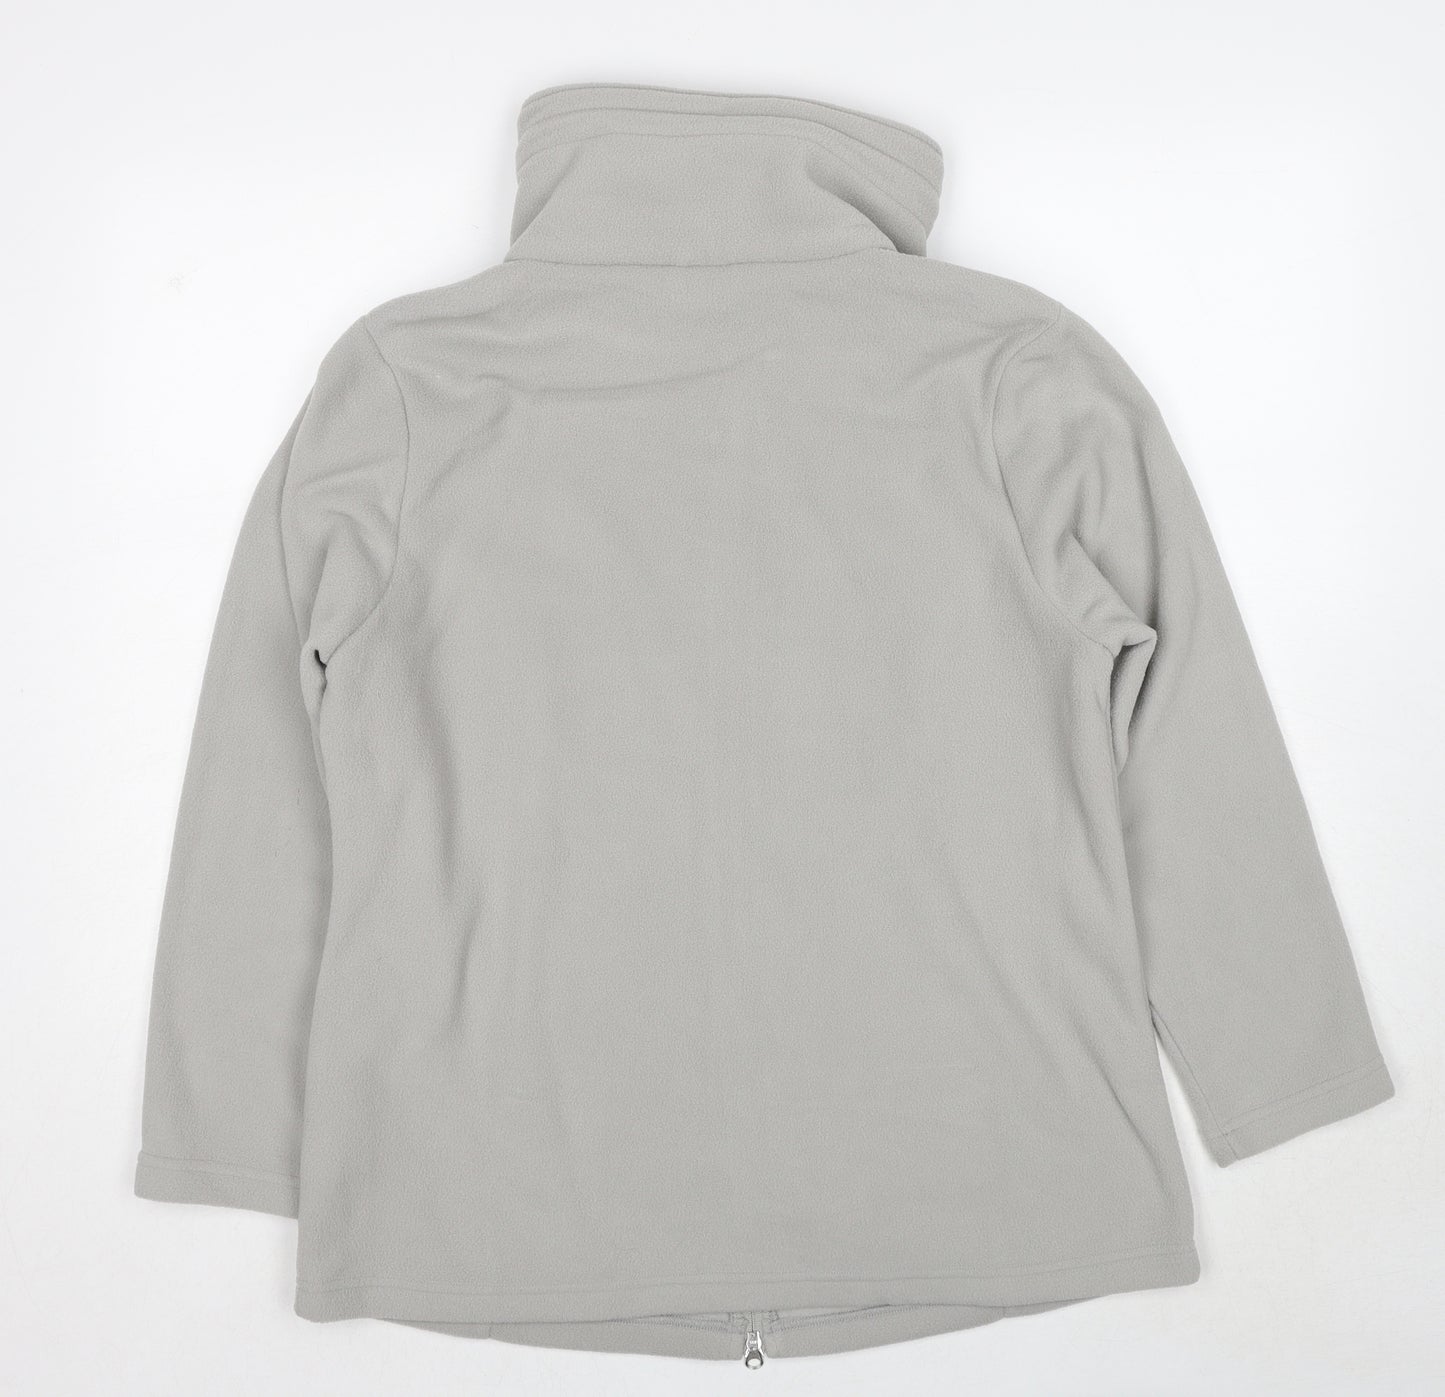 Warner's Womens Grey Jacket Size 18 Zip